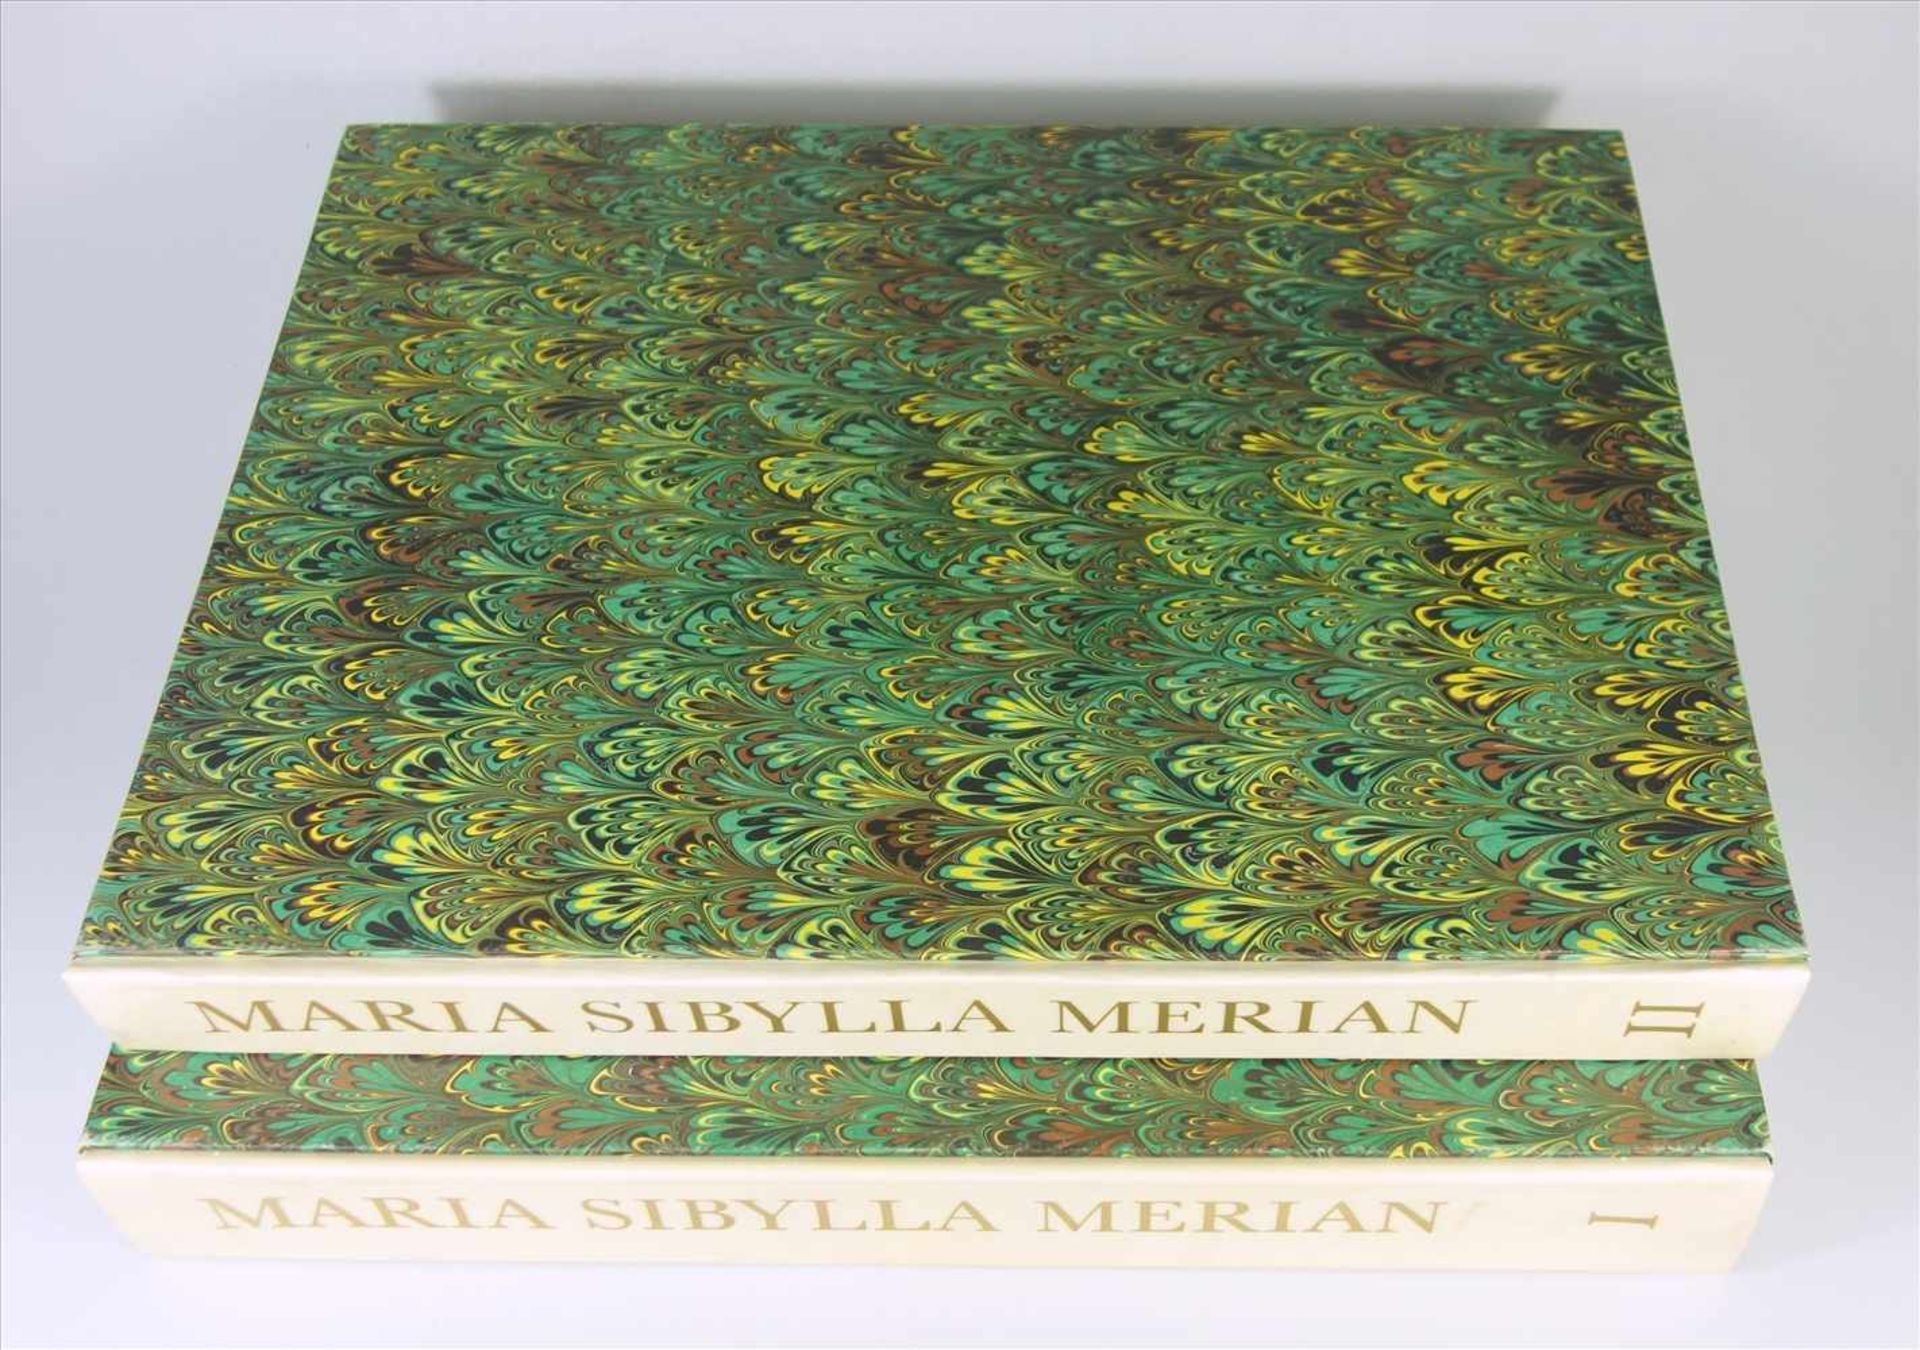 Maria Sibylla Merian, Leningrader Aquarelle. Faksimile und Kommentar. Edition Leipzig, 1974, 2 Bände